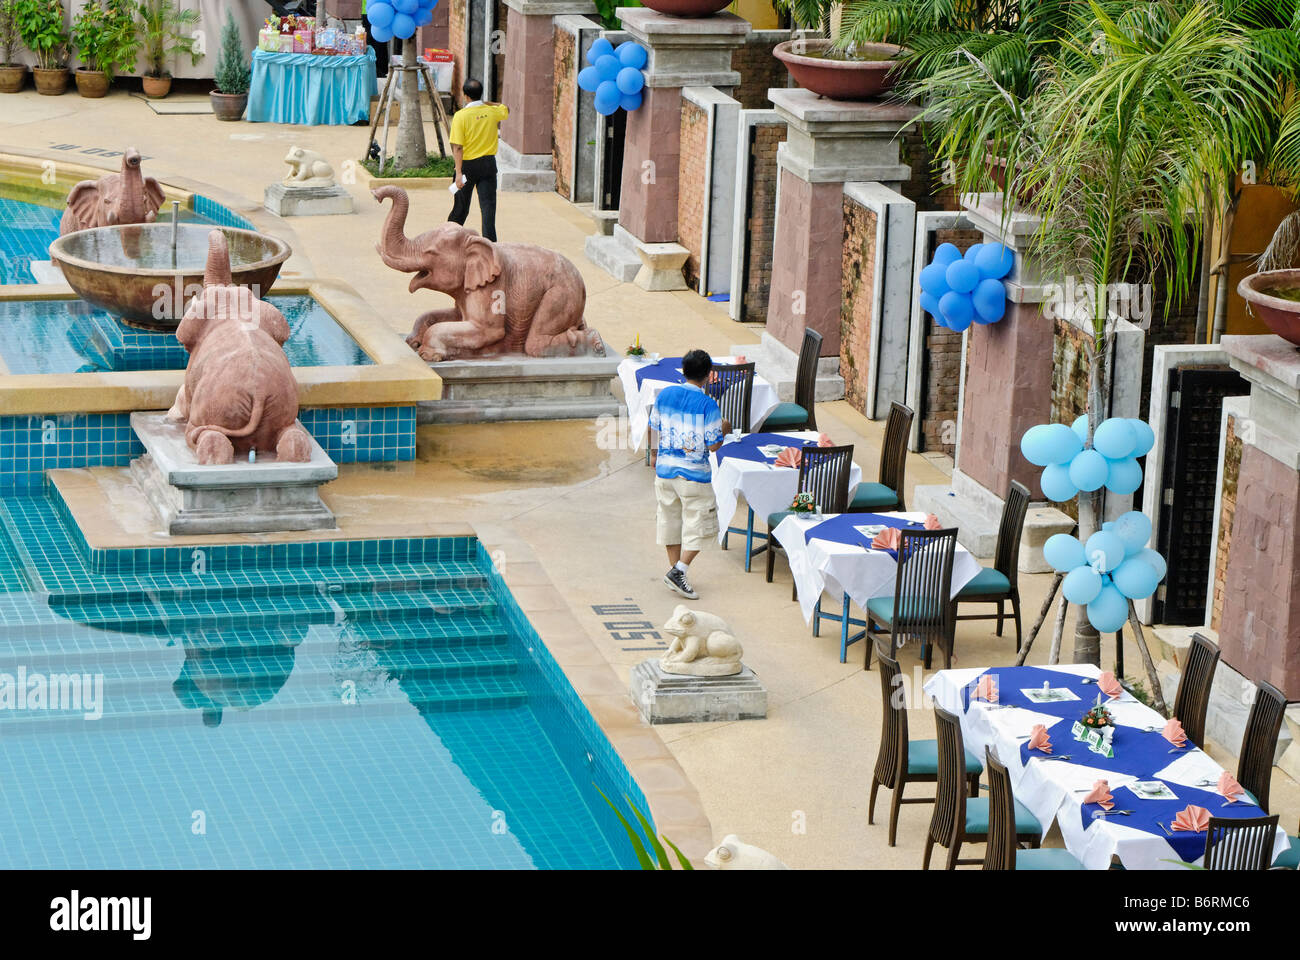 Vue de haut sur la piscine de l'île de Phuket Thailande Kamala Resort Banque D'Images